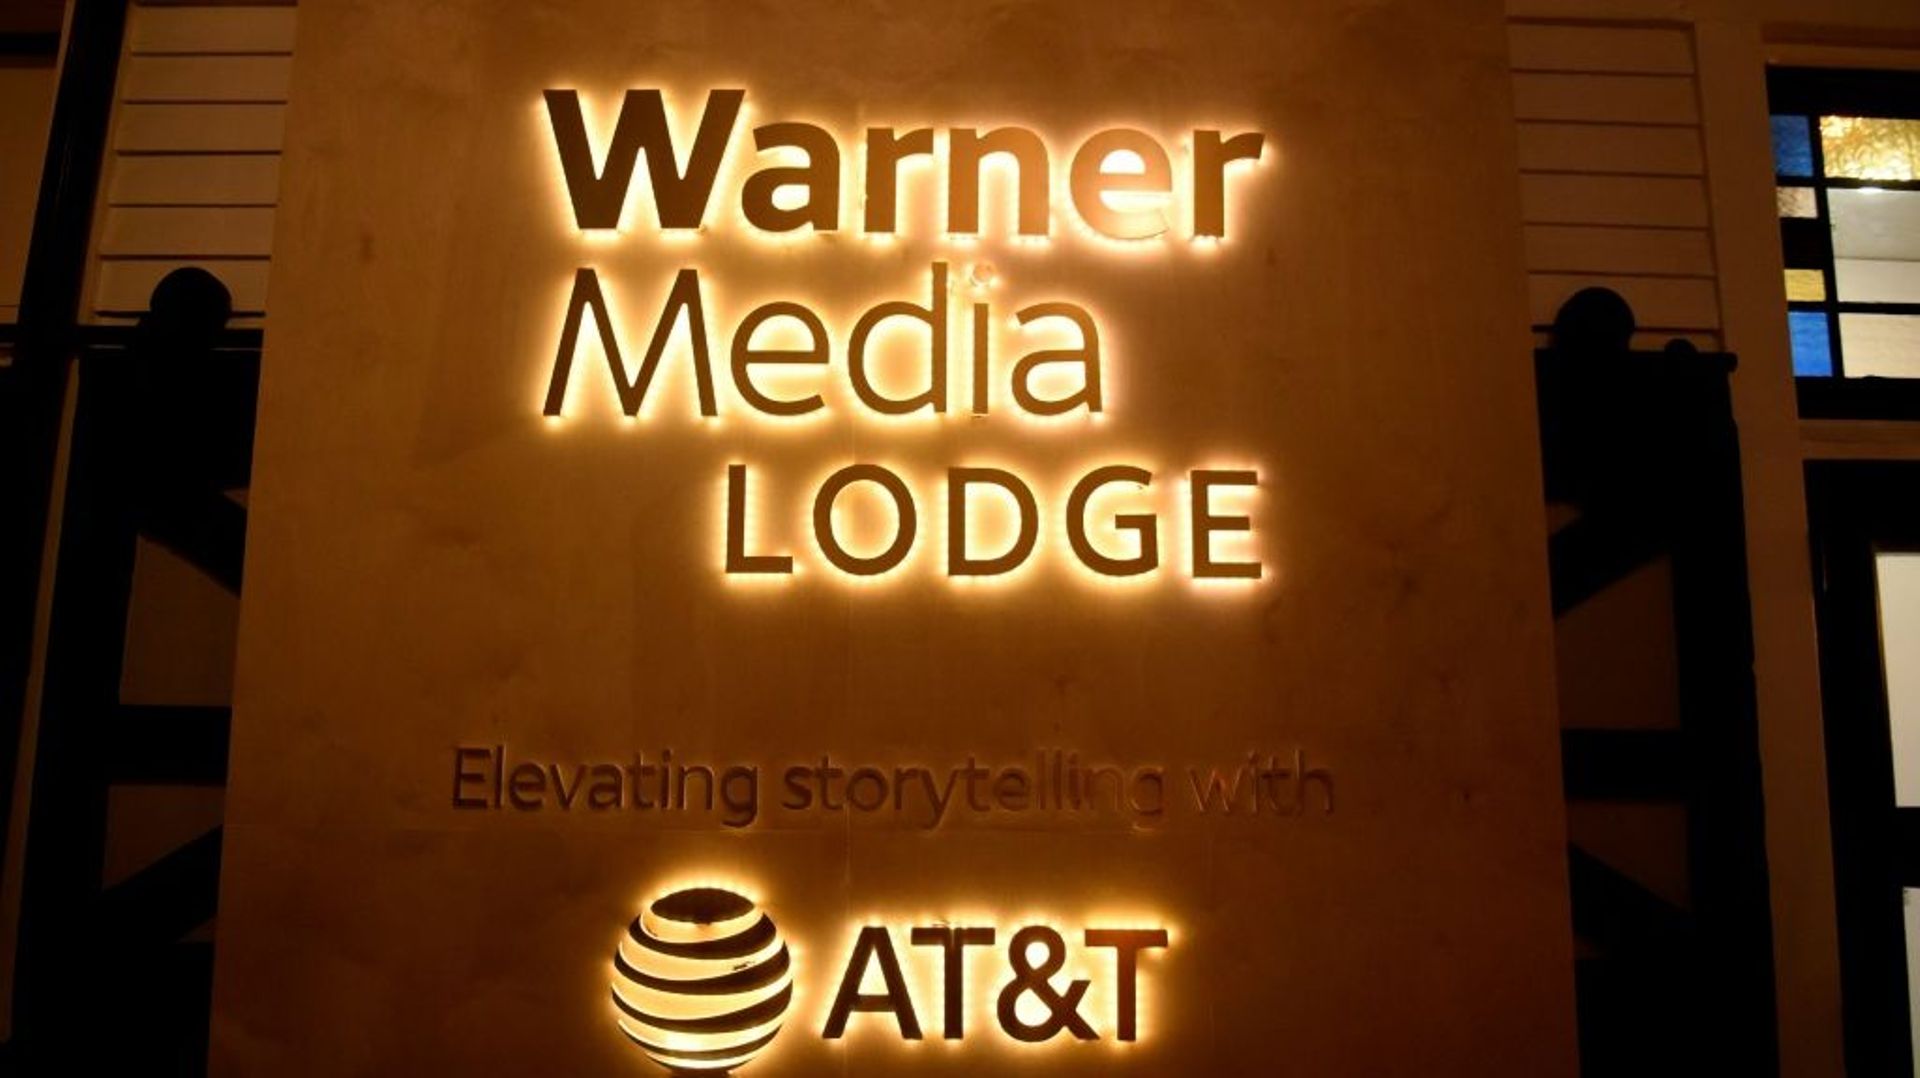 Le WarnerMedia Lodge pendant le festival du film de Sundance, à Park City dans l'Utah, le 25 janvier 2020